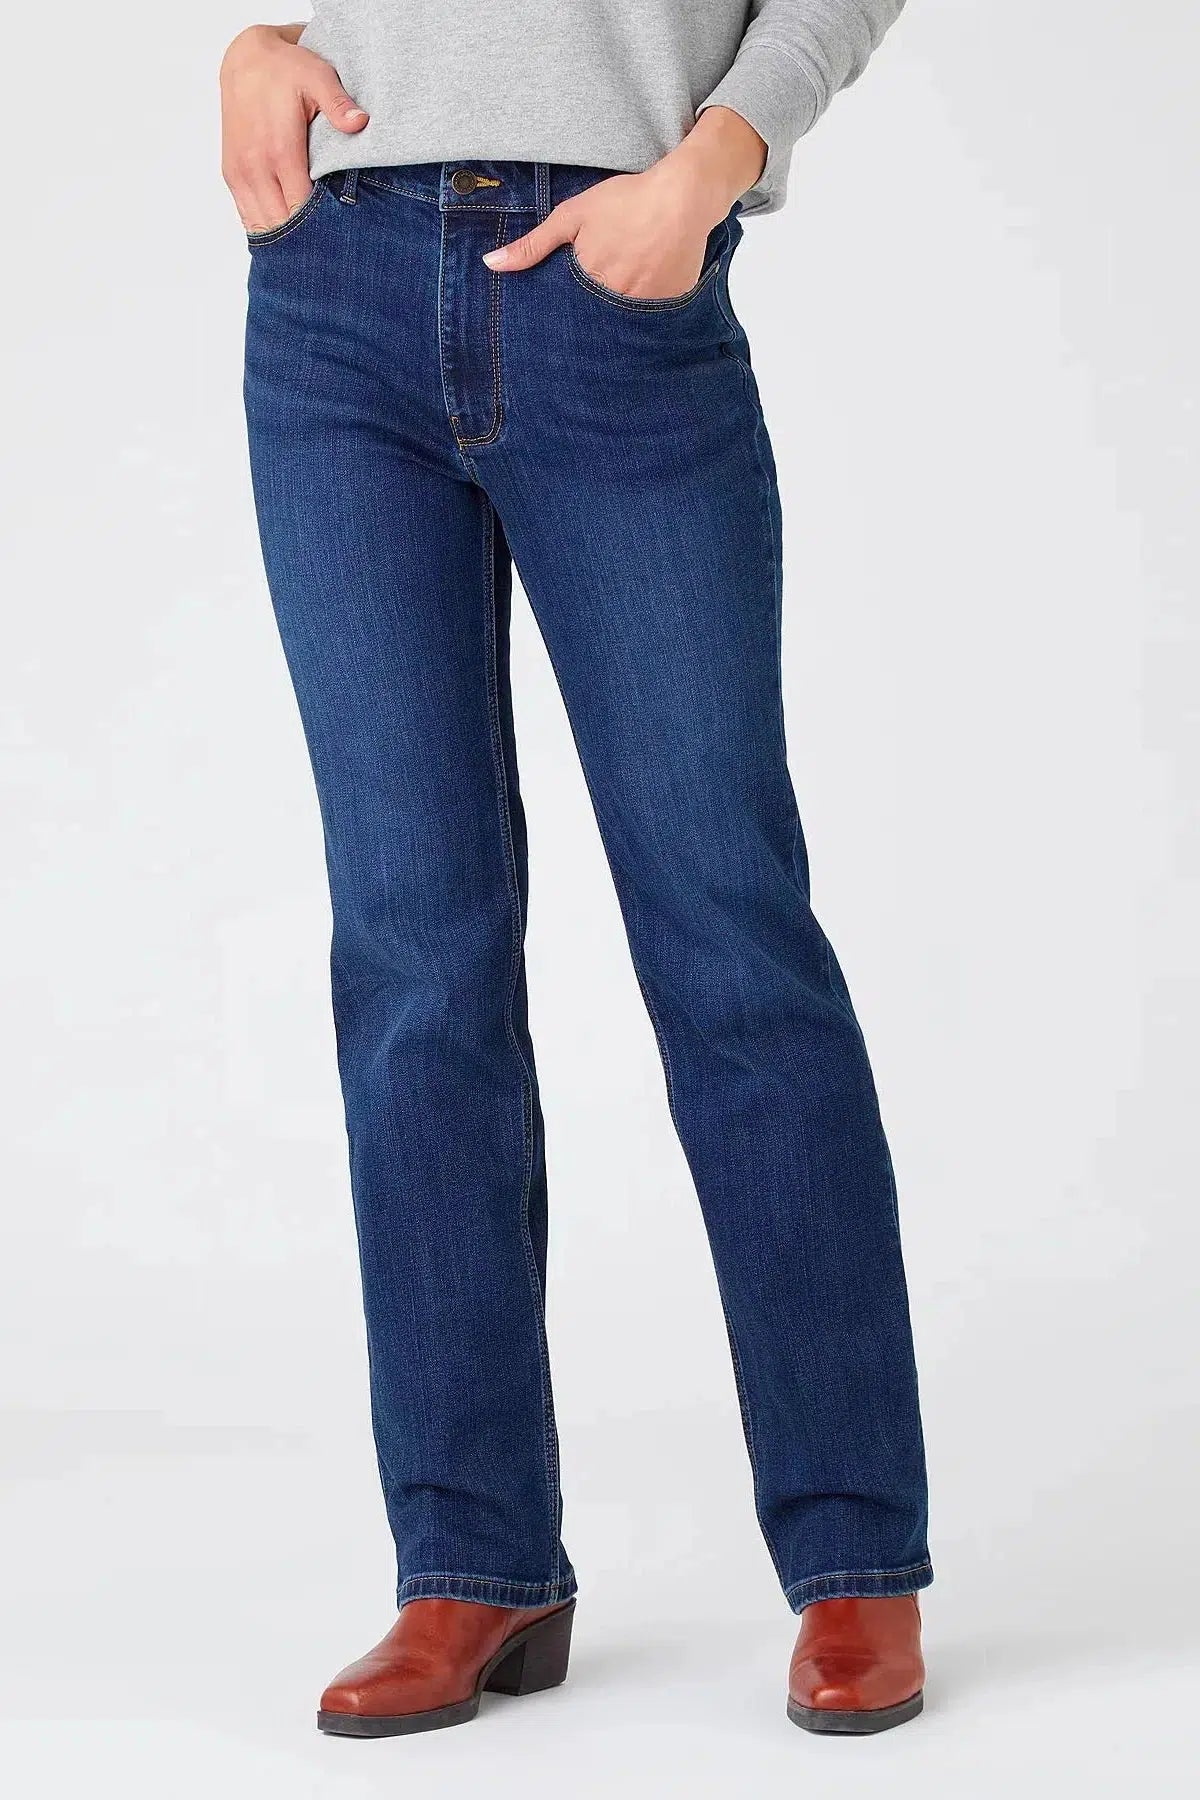 Wrangler Straight Boot Leg Jeans Blue Denim / 4 / Reg